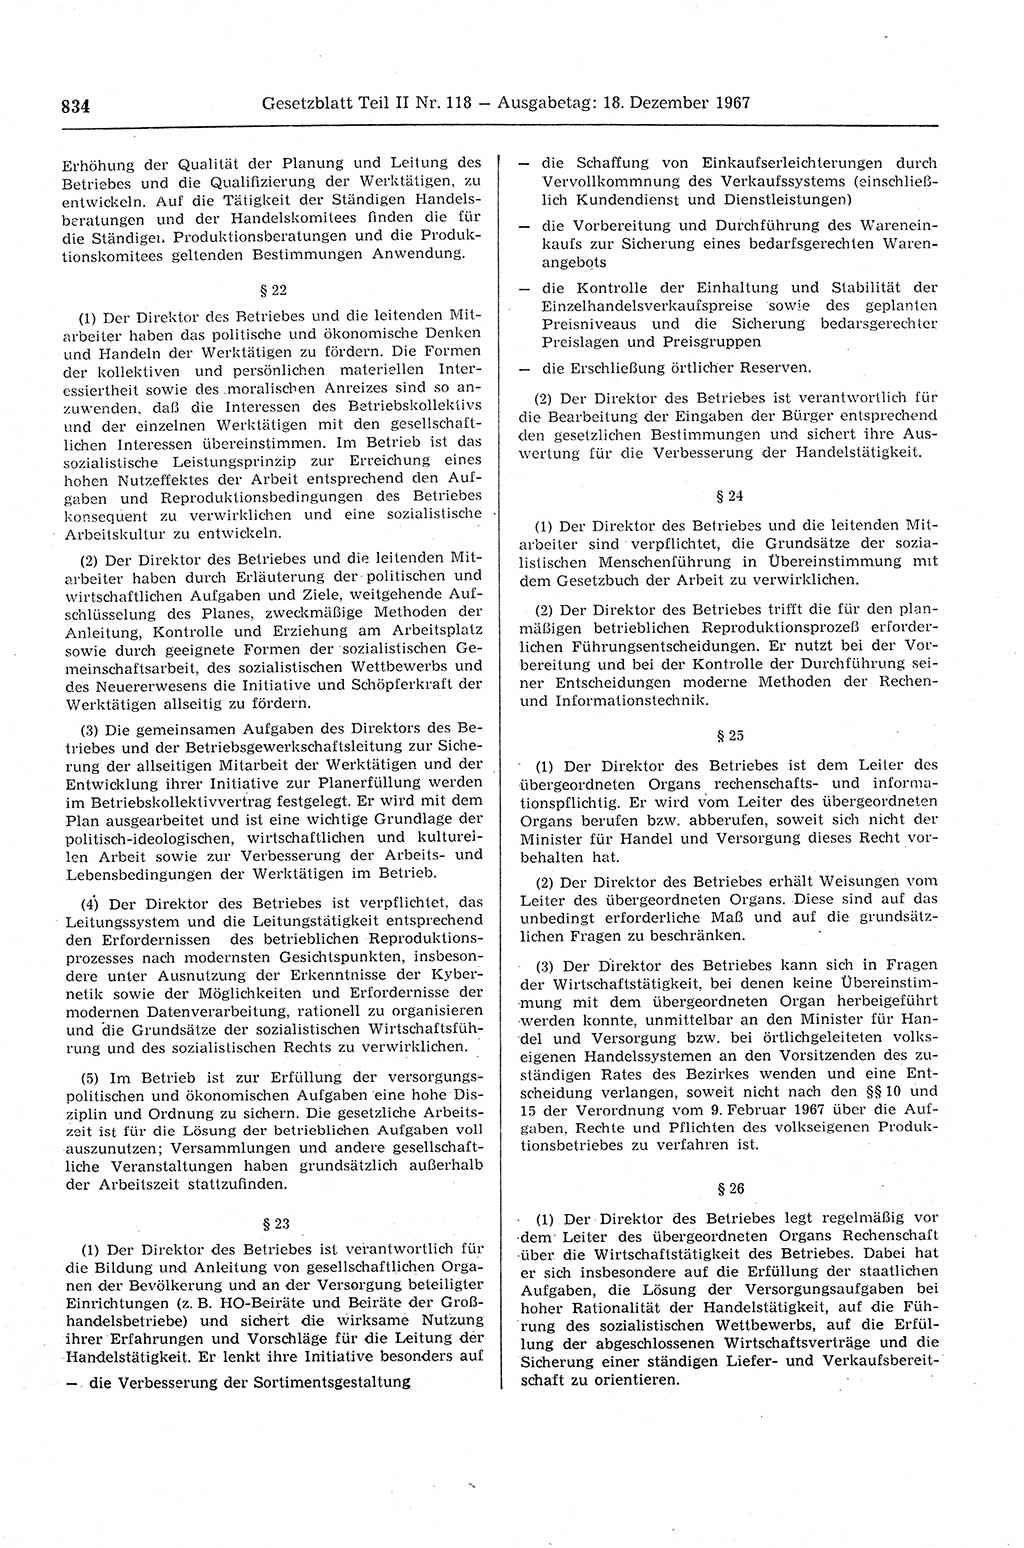 Gesetzblatt (GBl.) der Deutschen Demokratischen Republik (DDR) Teil ⅠⅠ 1967, Seite 834 (GBl. DDR ⅠⅠ 1967, S. 834)